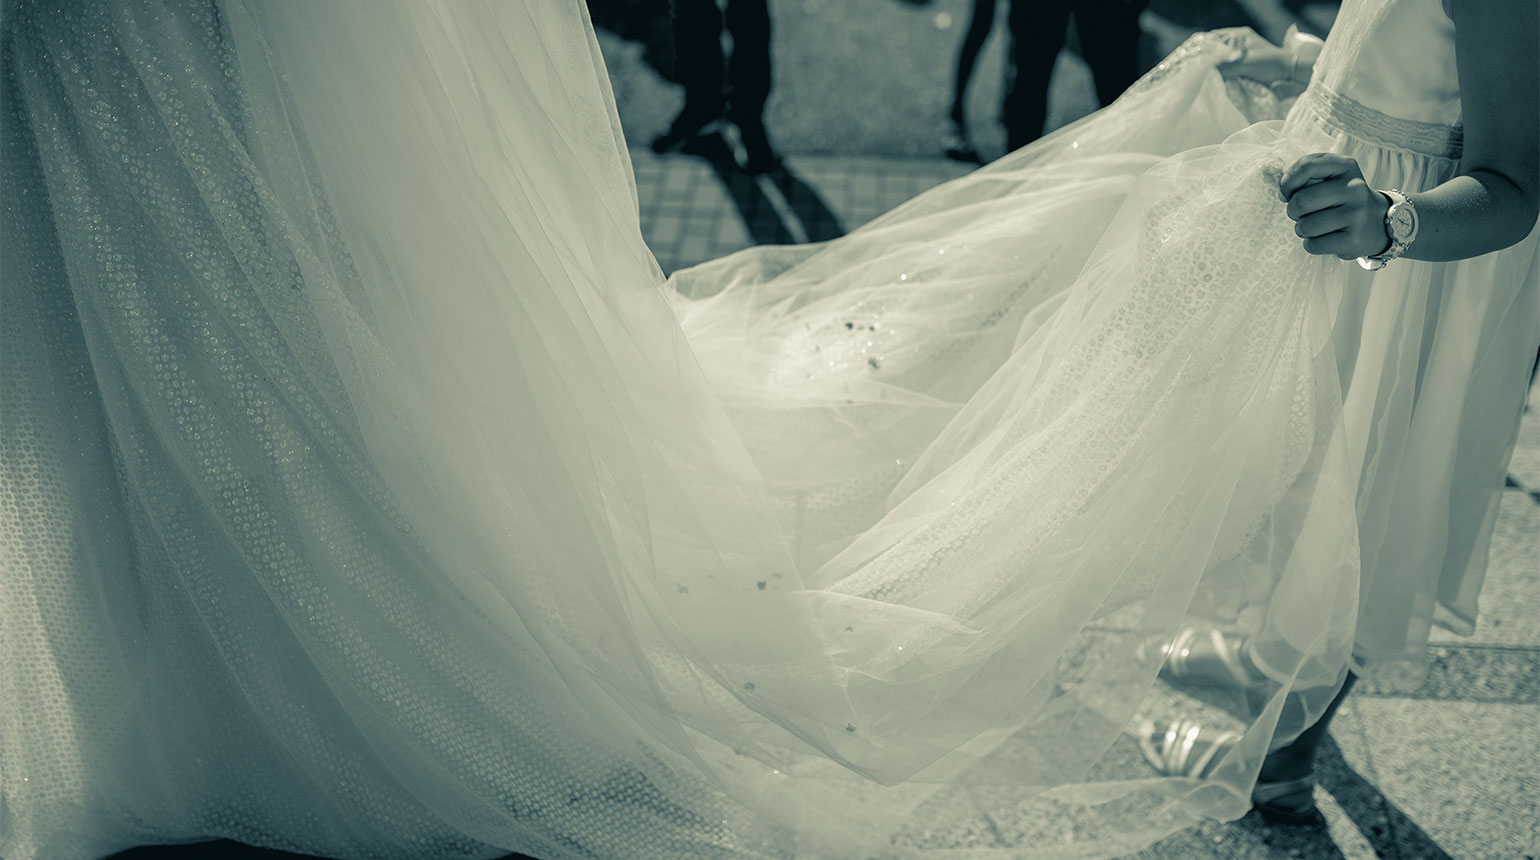 Szene auf einer Hochzeitsfeier. Zu sehen sind ein Teil des Brautkleids und die Beine der Umstehenden.